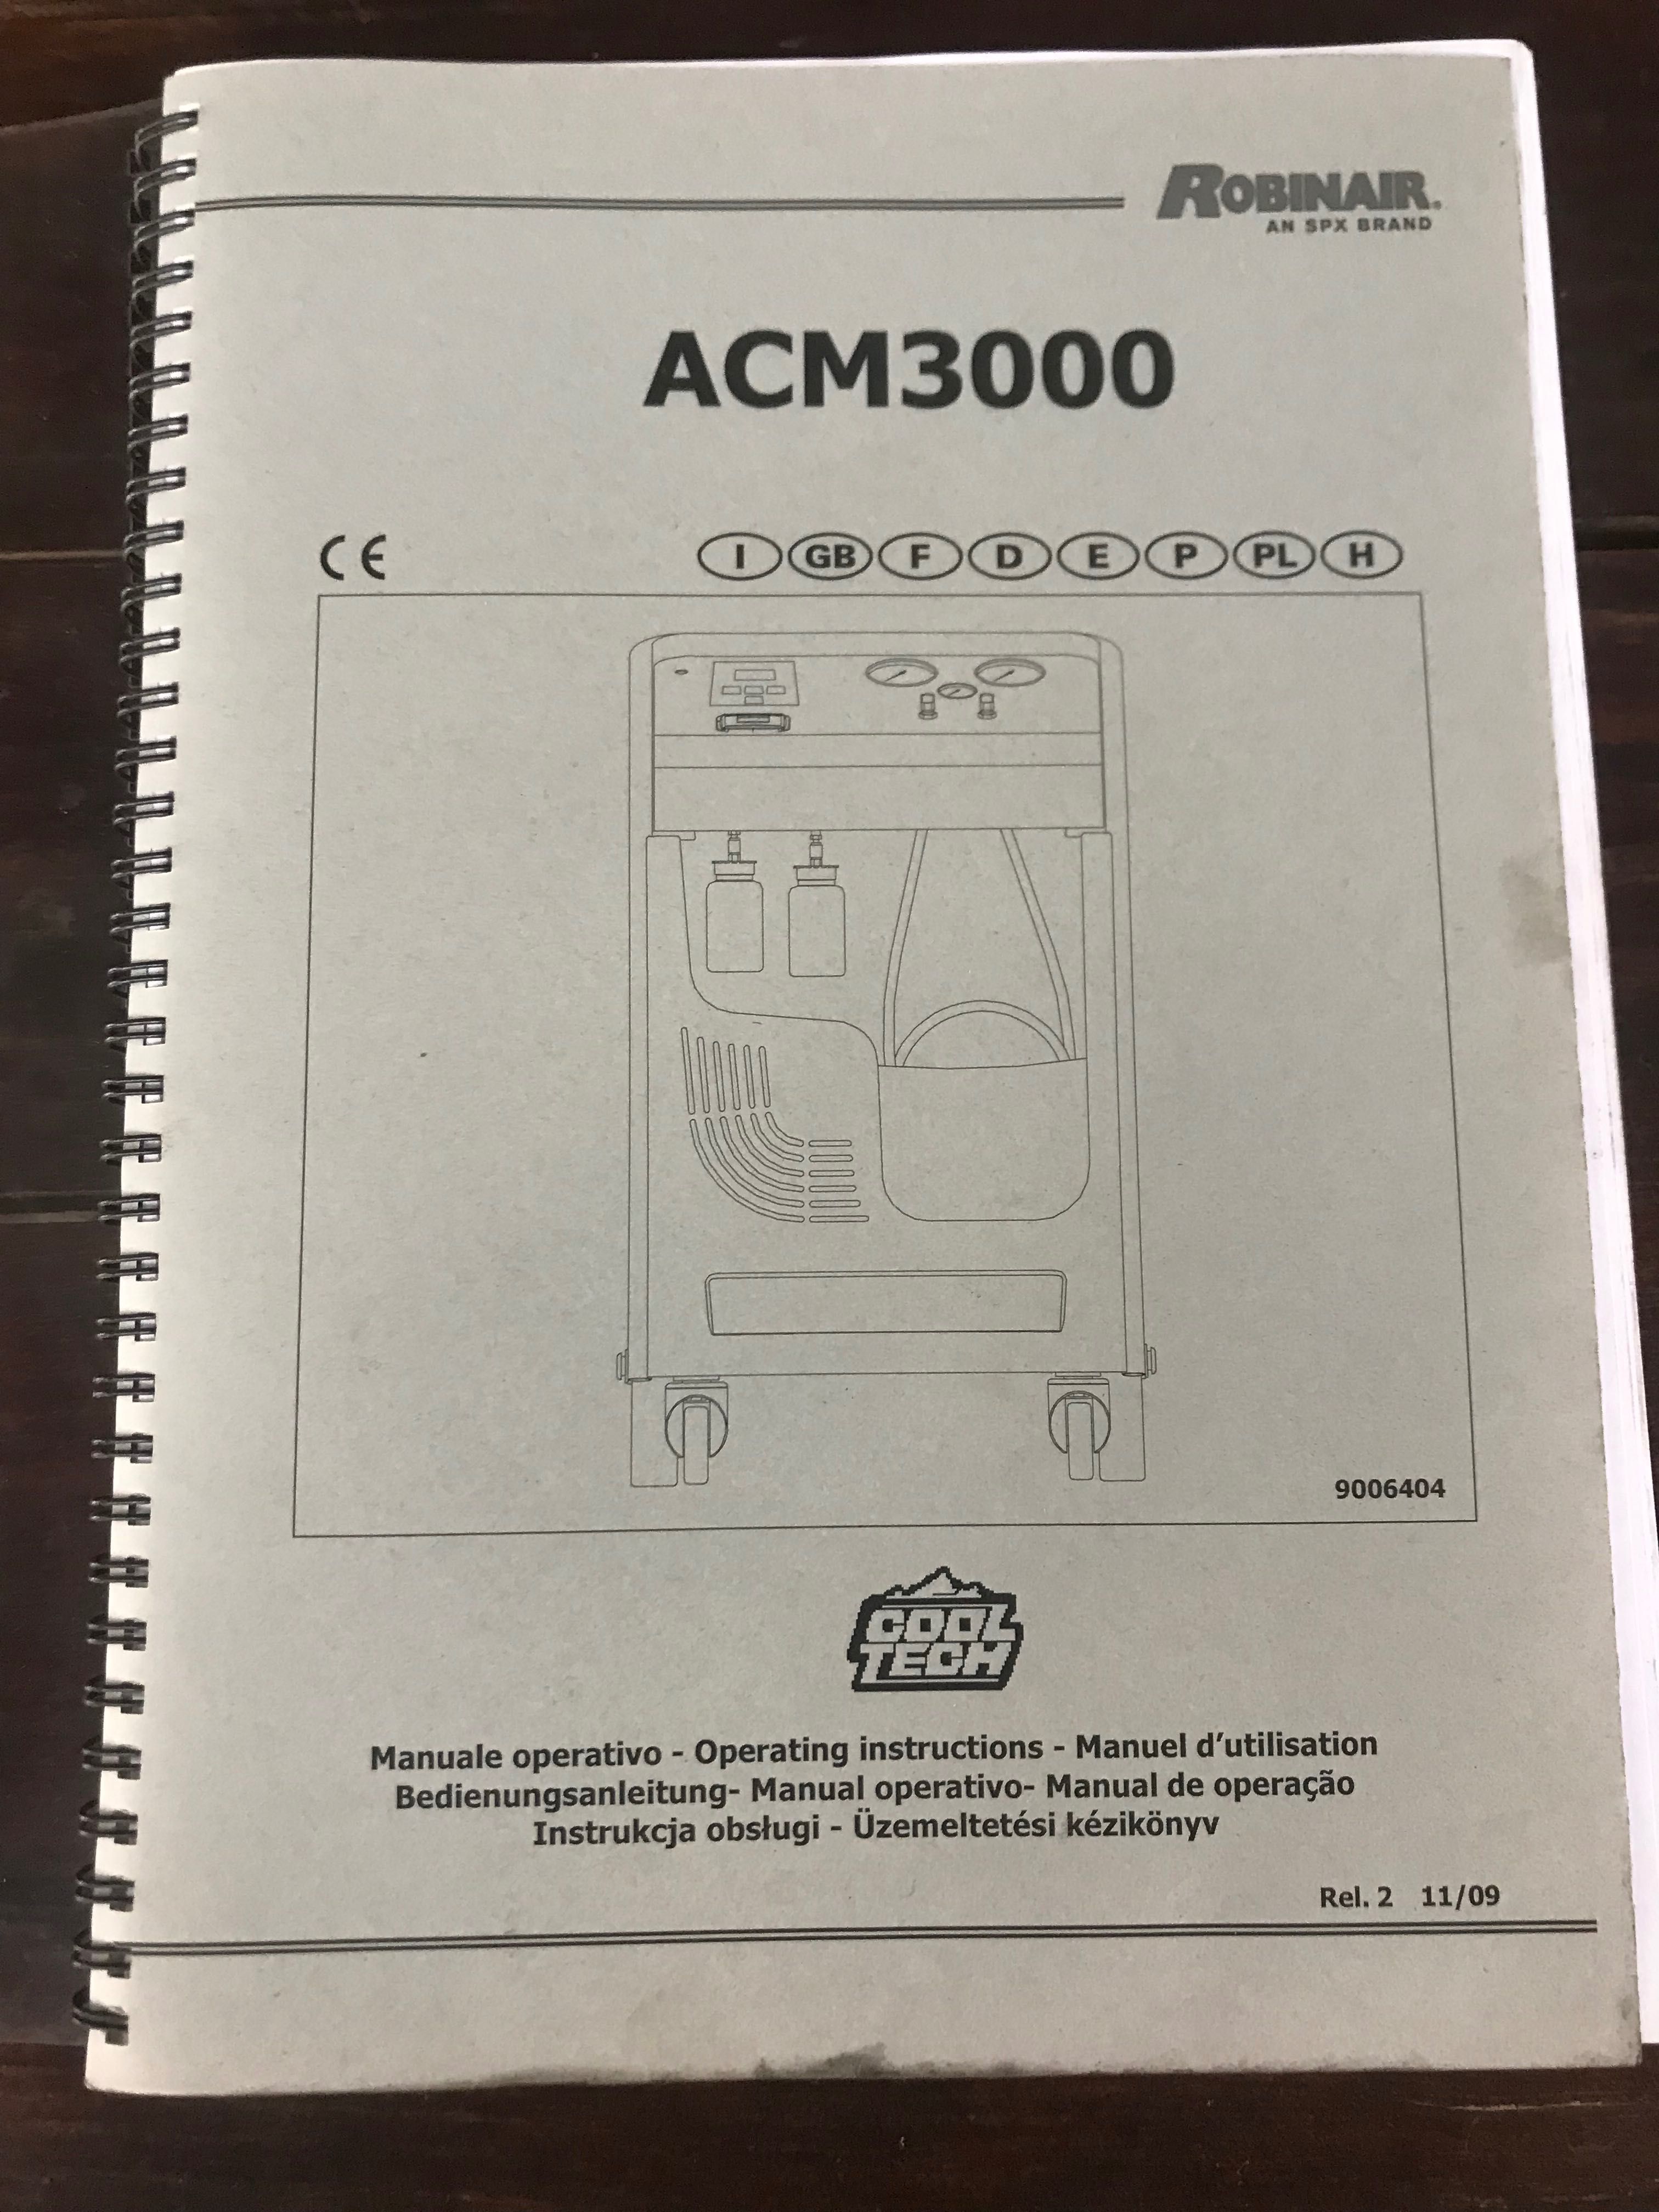 Установка обслуживания кондиционеров ROBINAIR ACM3000